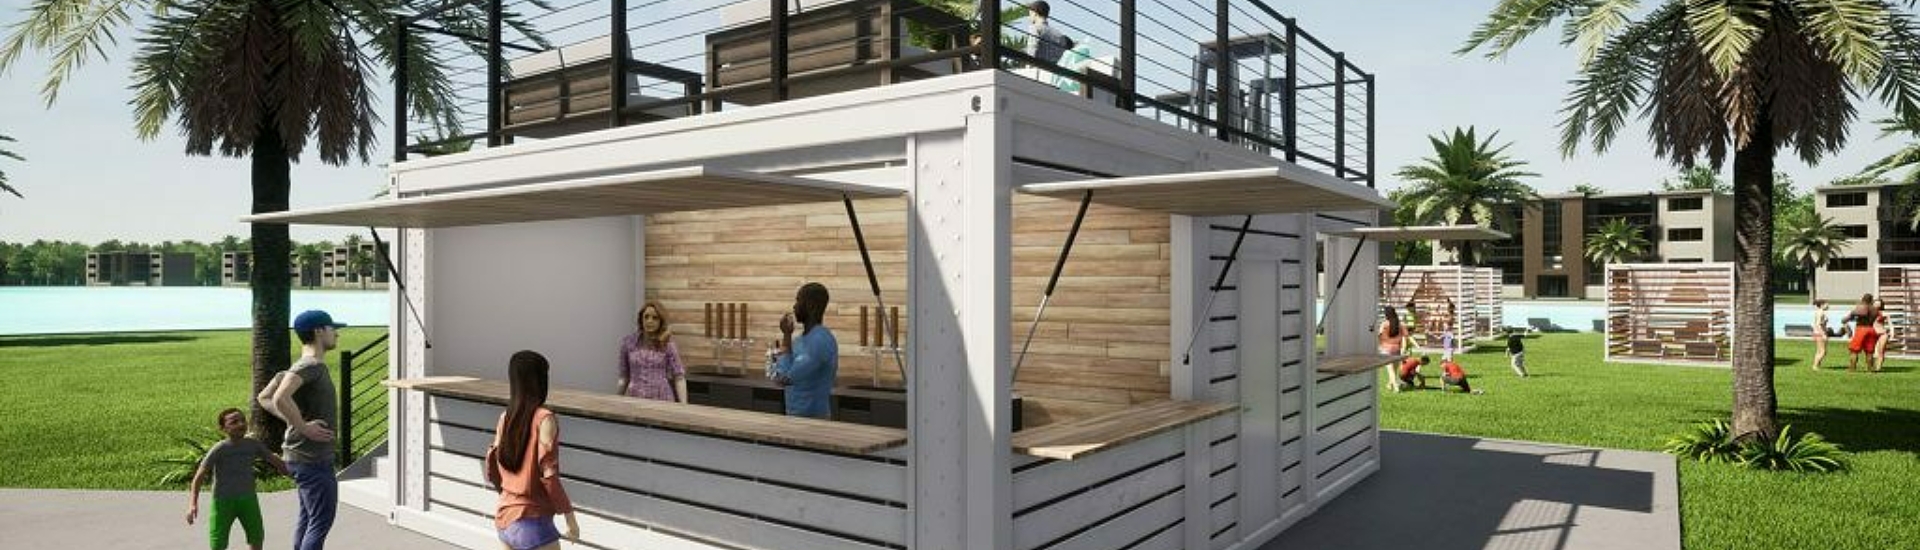 A BoxPop DBL 20 rendering for an outdoor bar